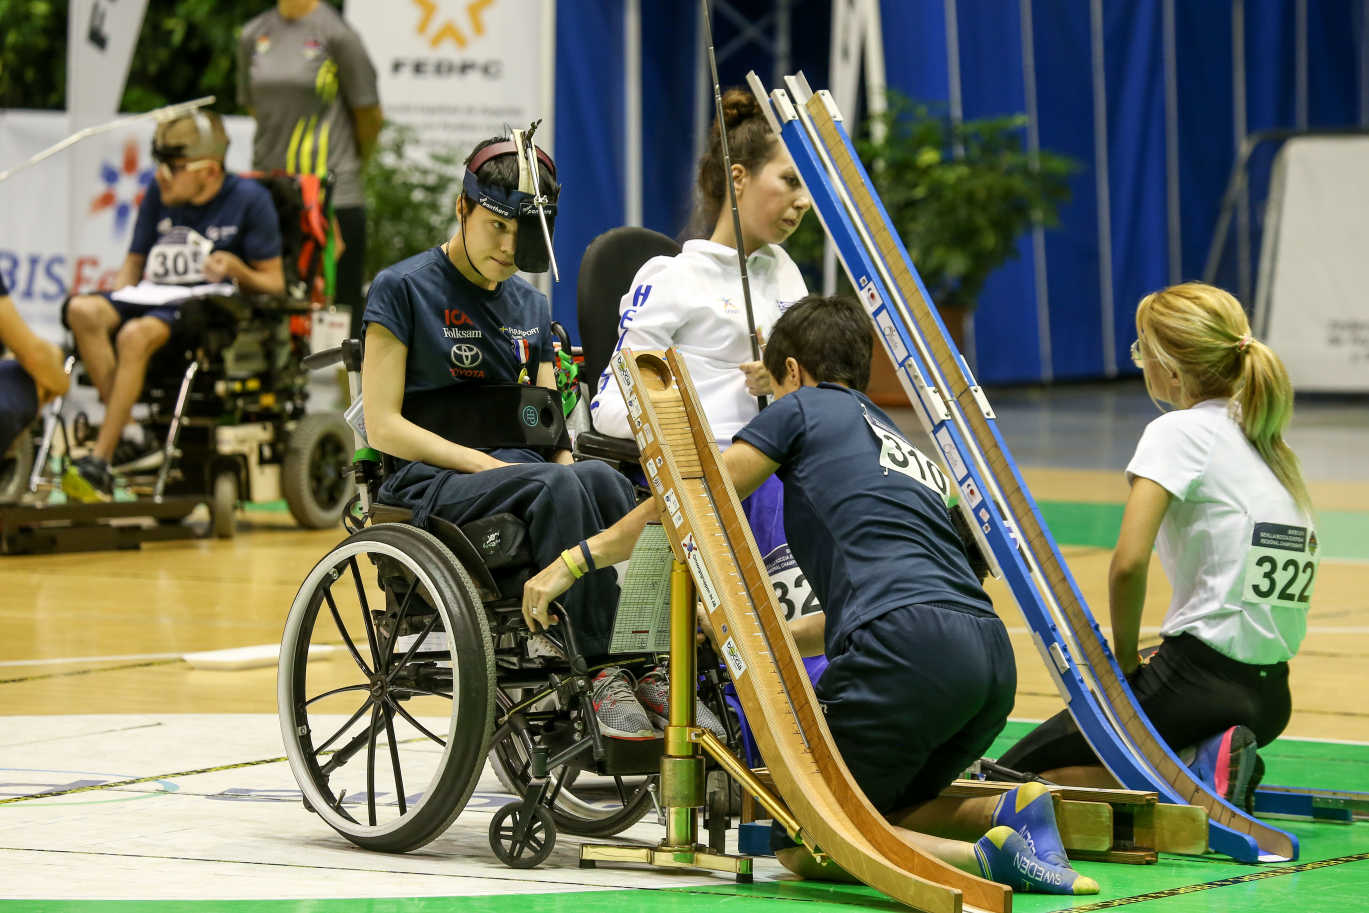 Maria med assistent under en match i boccia. Maria sitter i rullstol och spelar med en ränna. 